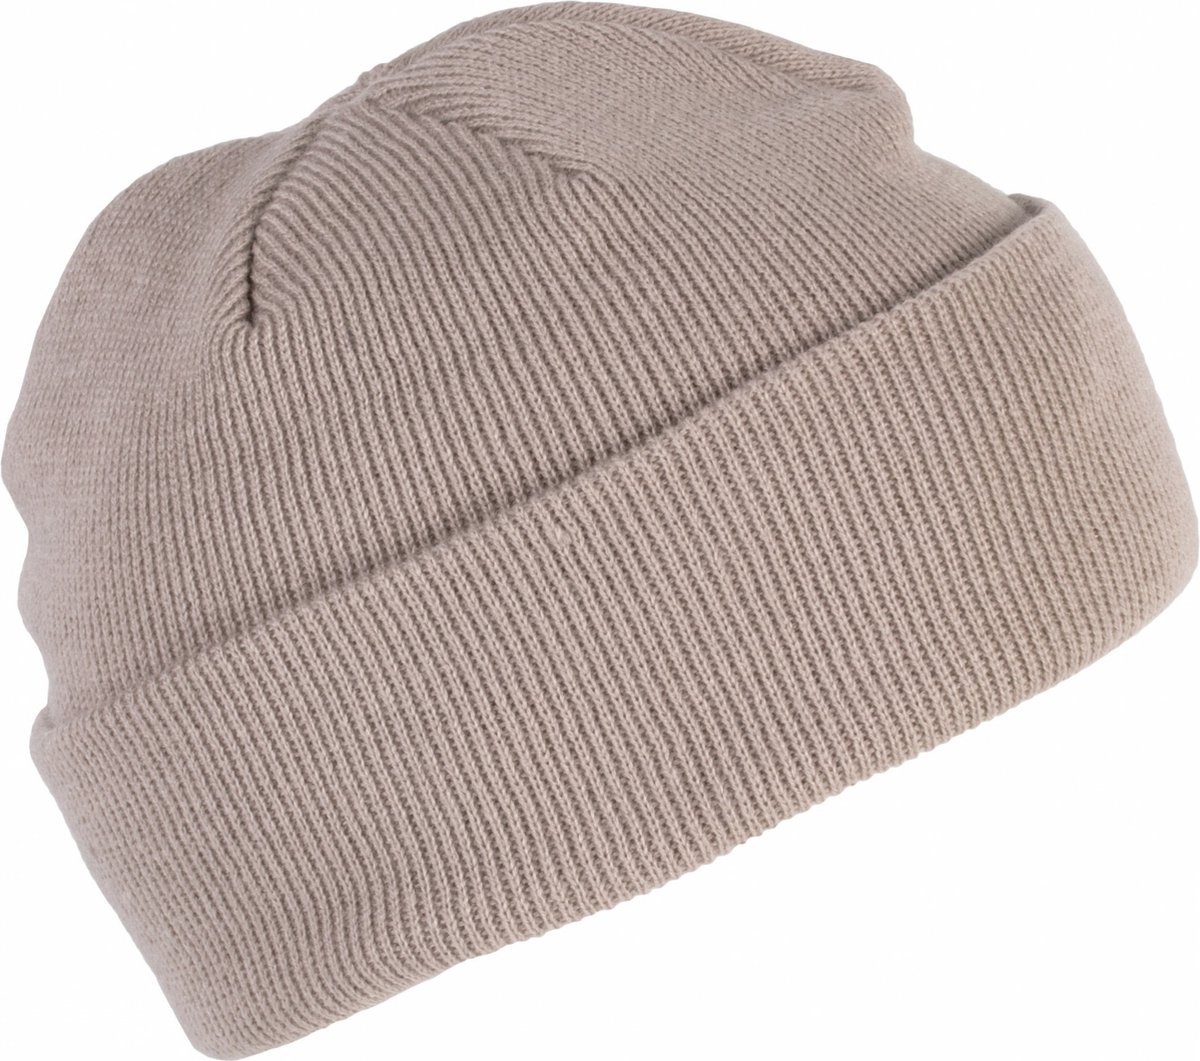 K-up Hats Wintermuts Beanie Yukon - beige - heren/dames - sterk/zacht/licht gebreid 100% Acryl - Dames/herenmuts